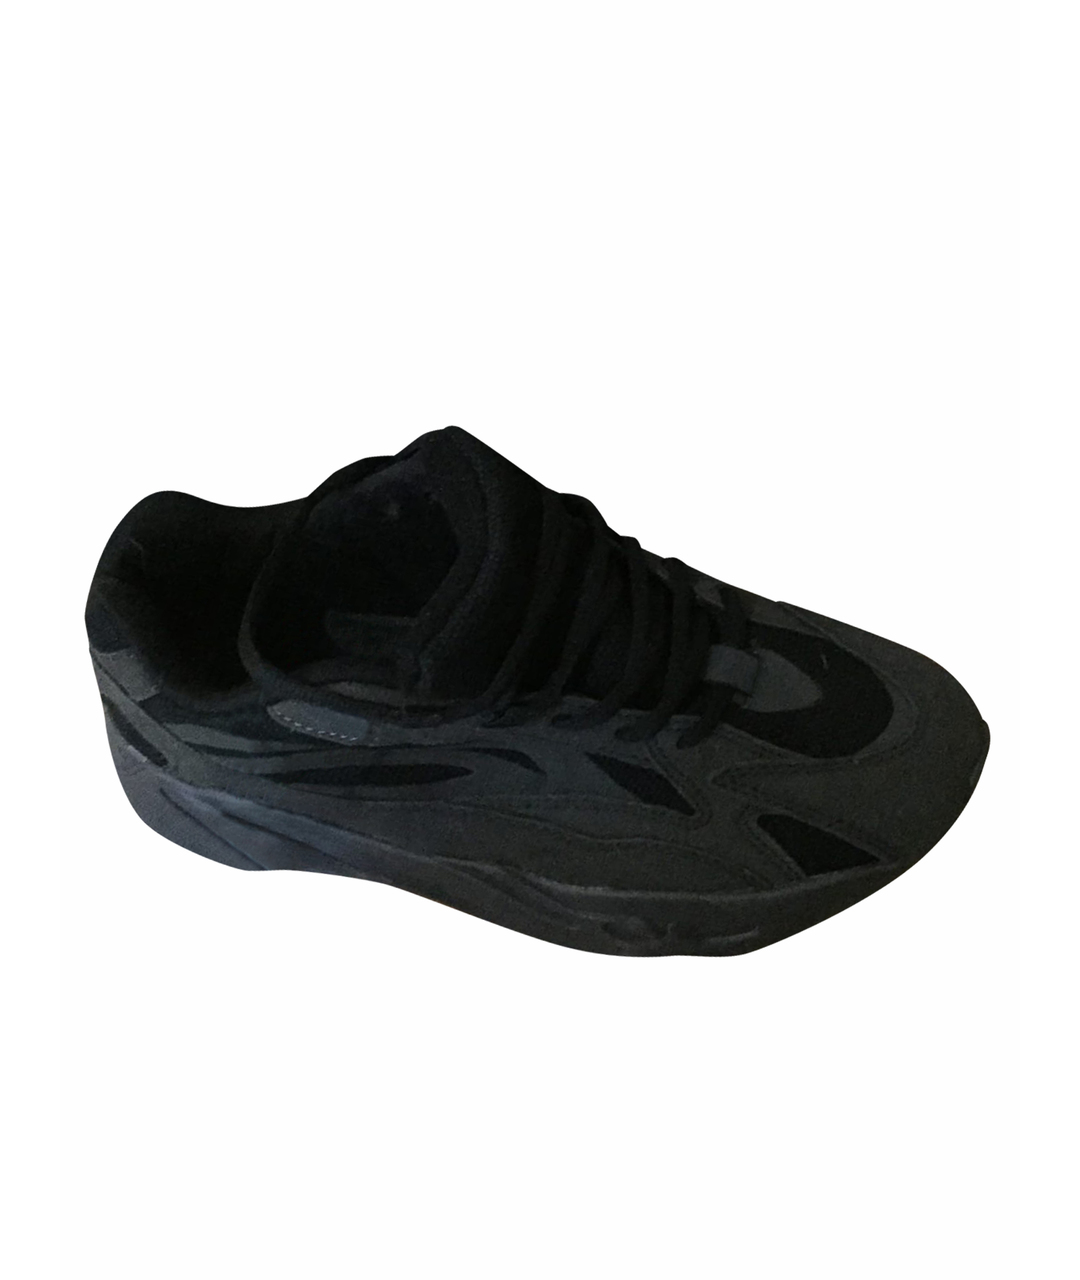 ADIDAS YEEZY Черные низкие кроссовки / кеды, фото 1